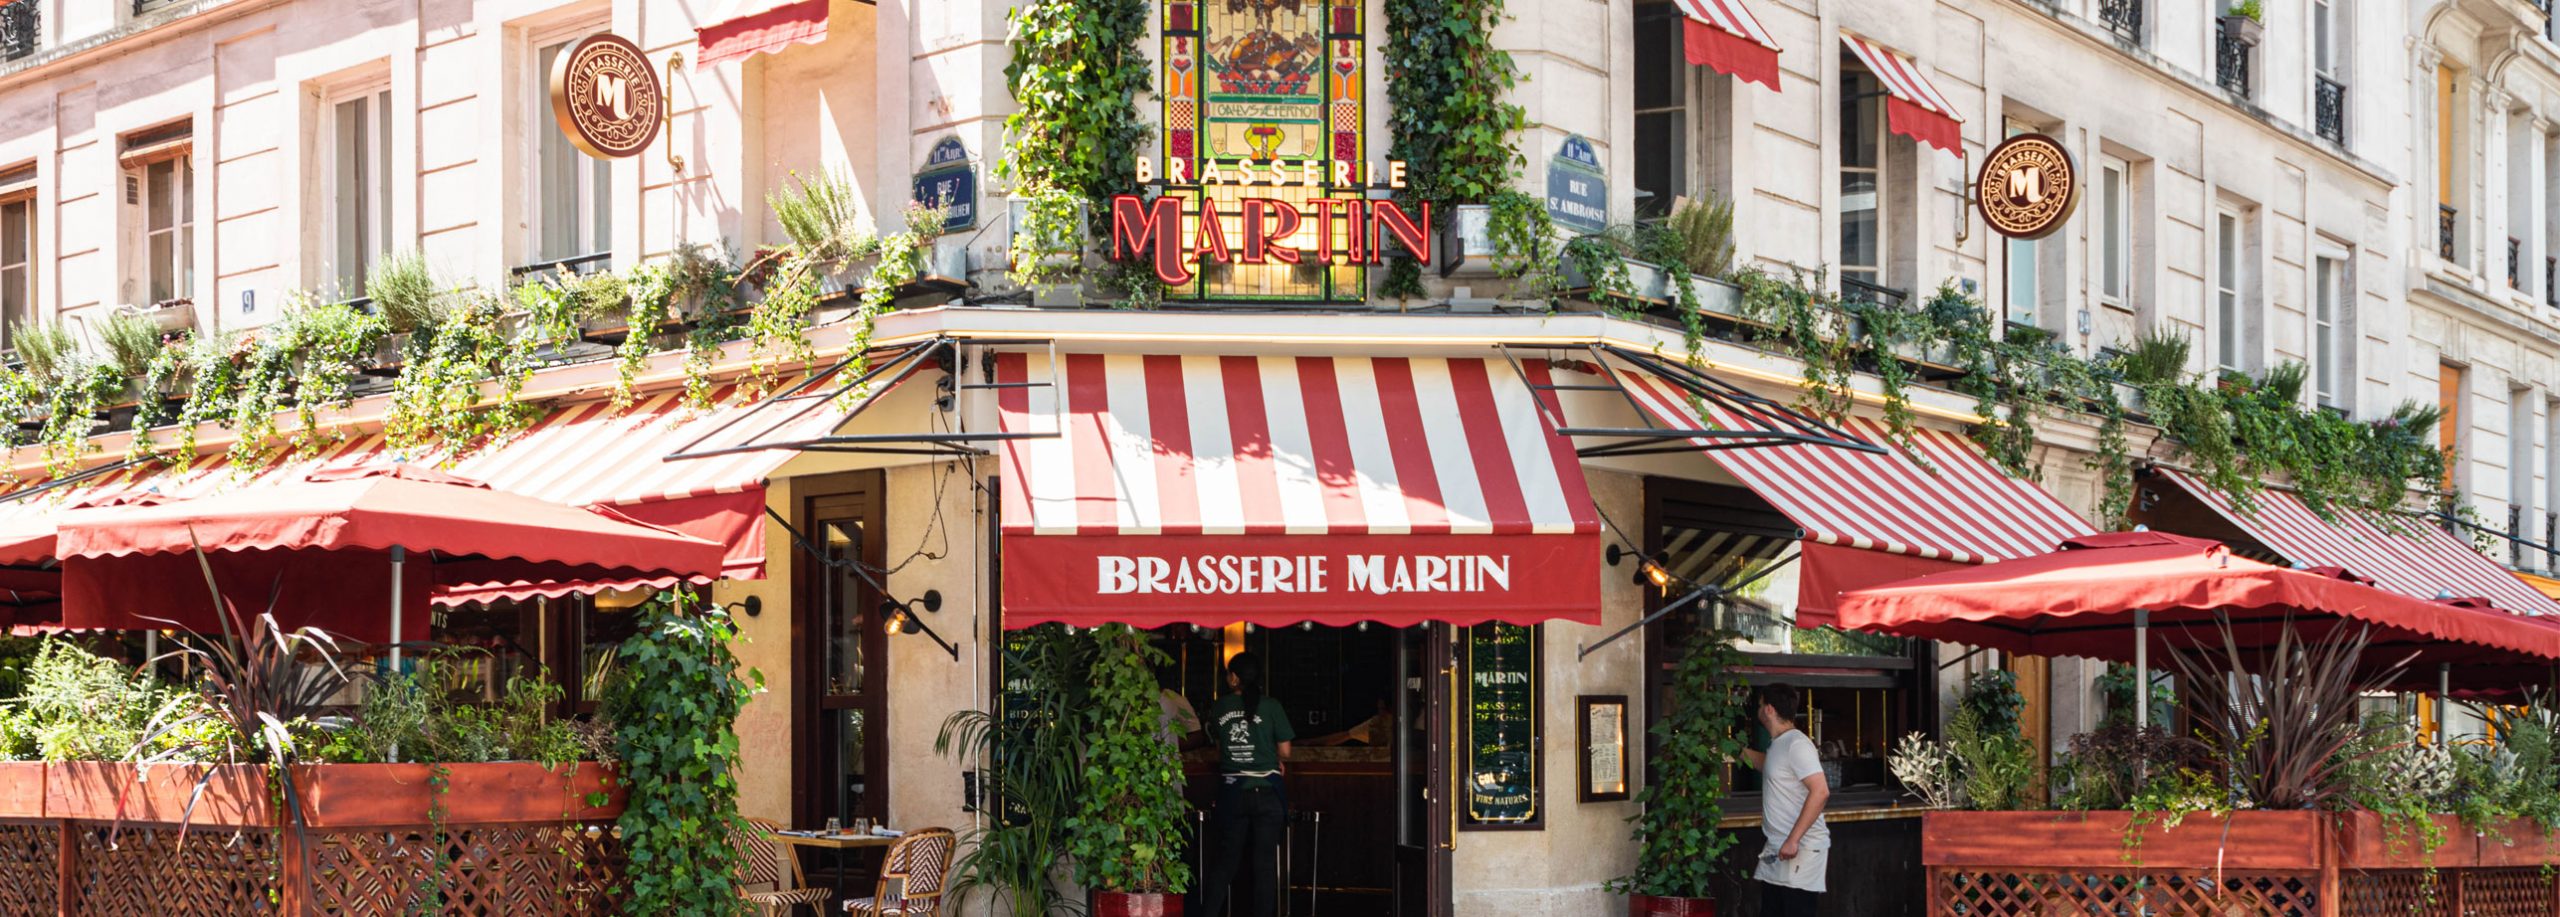 Brasserie-Martin-lieu-photo-6